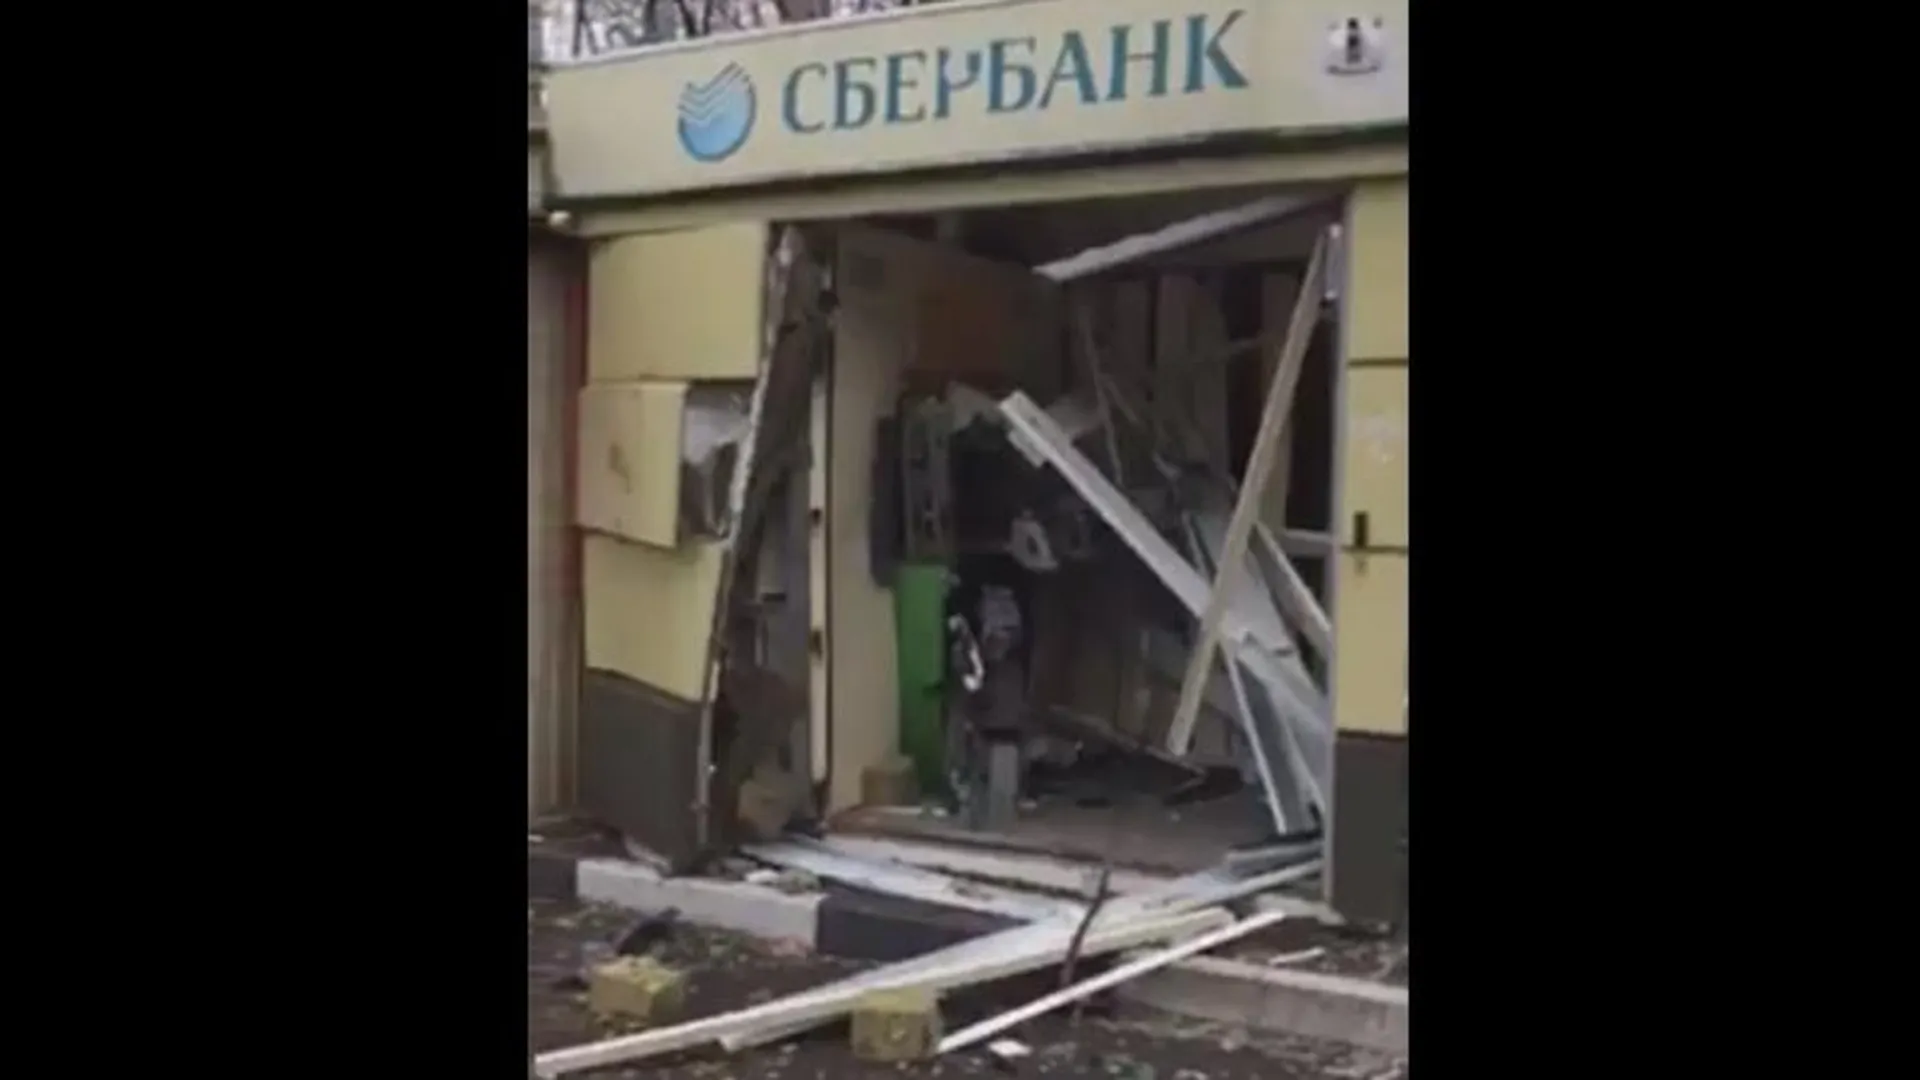 Банкомат Сбербанка, который взорвали бандиты-неудачники, располагался в совхозе имени Ленина